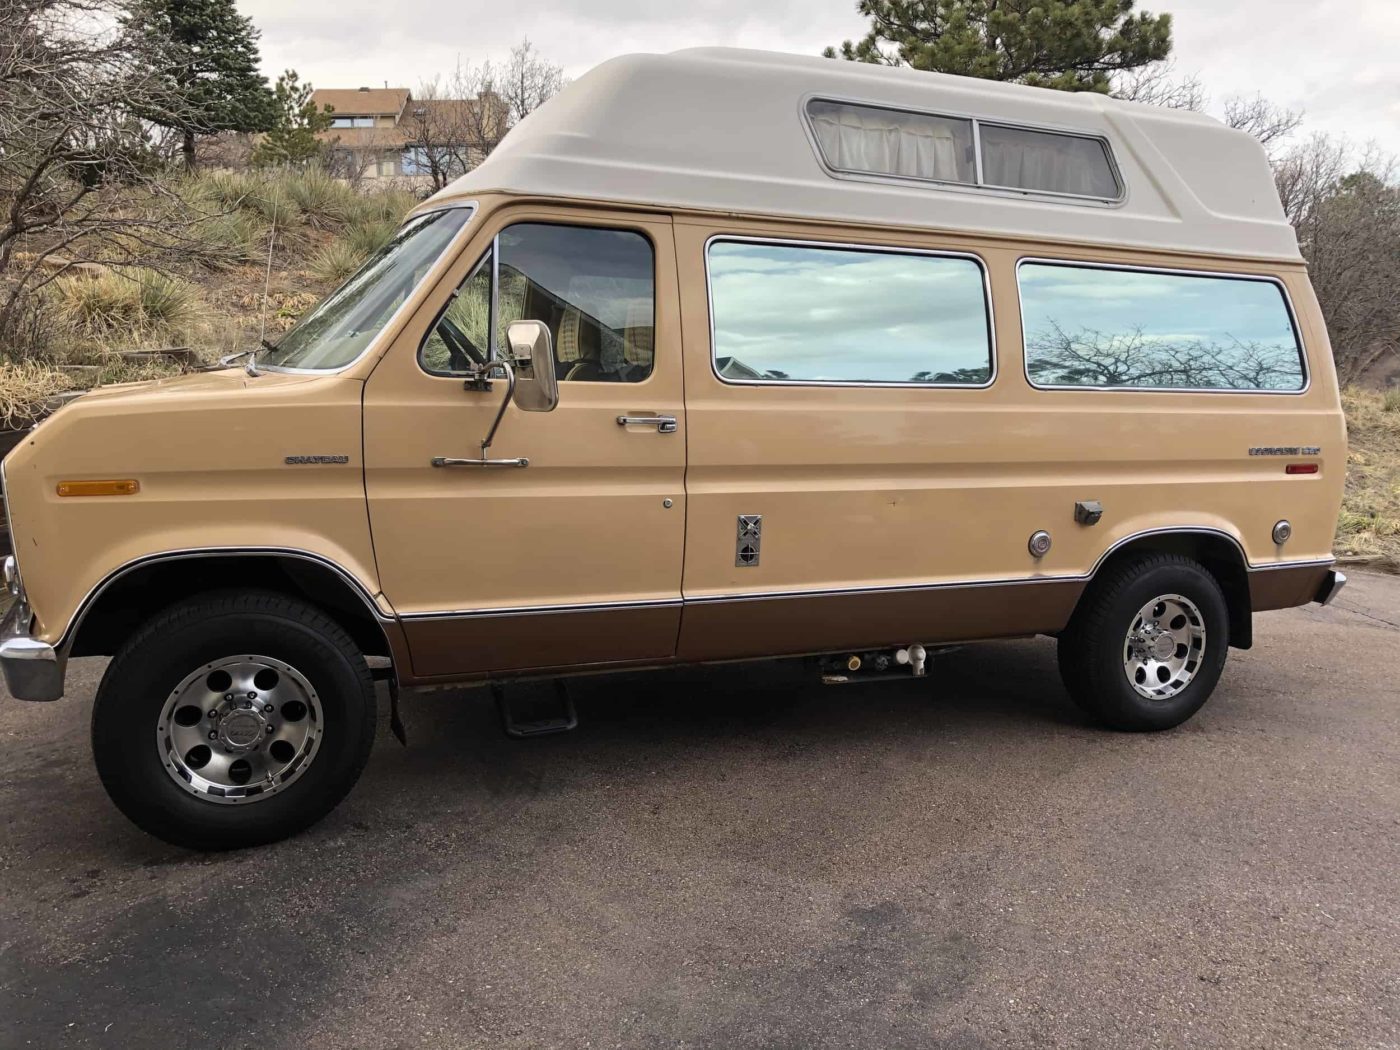 1976 Ford E-Series Camper Van For Sale in Colorado Springs, Colorado